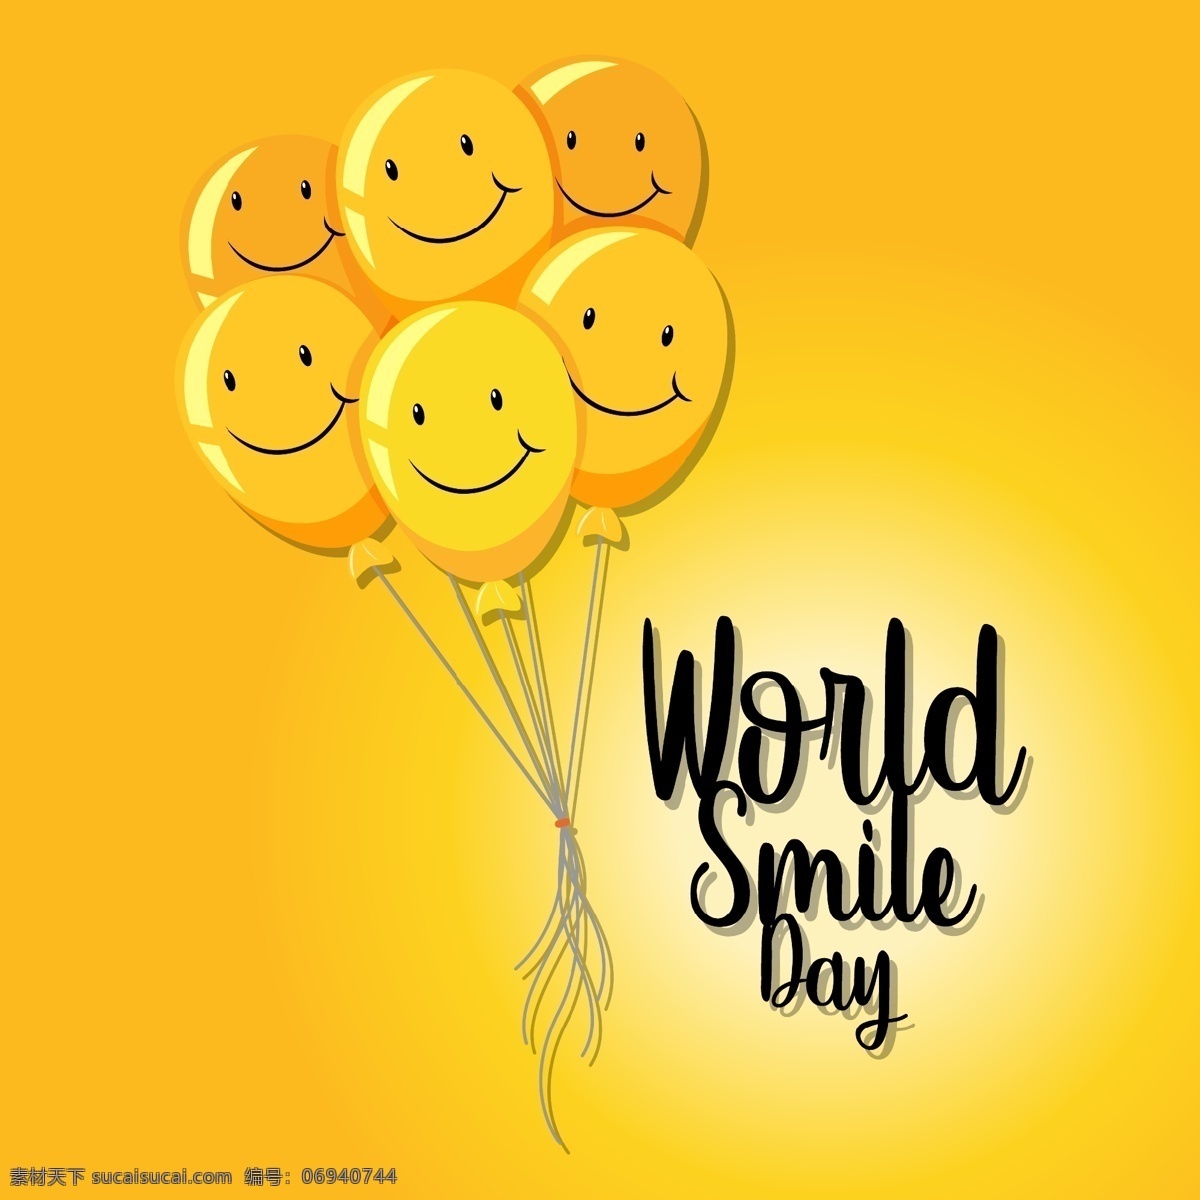 微笑 表情 气球 微笑表情气球 快乐 背景 黄色 卡通设计